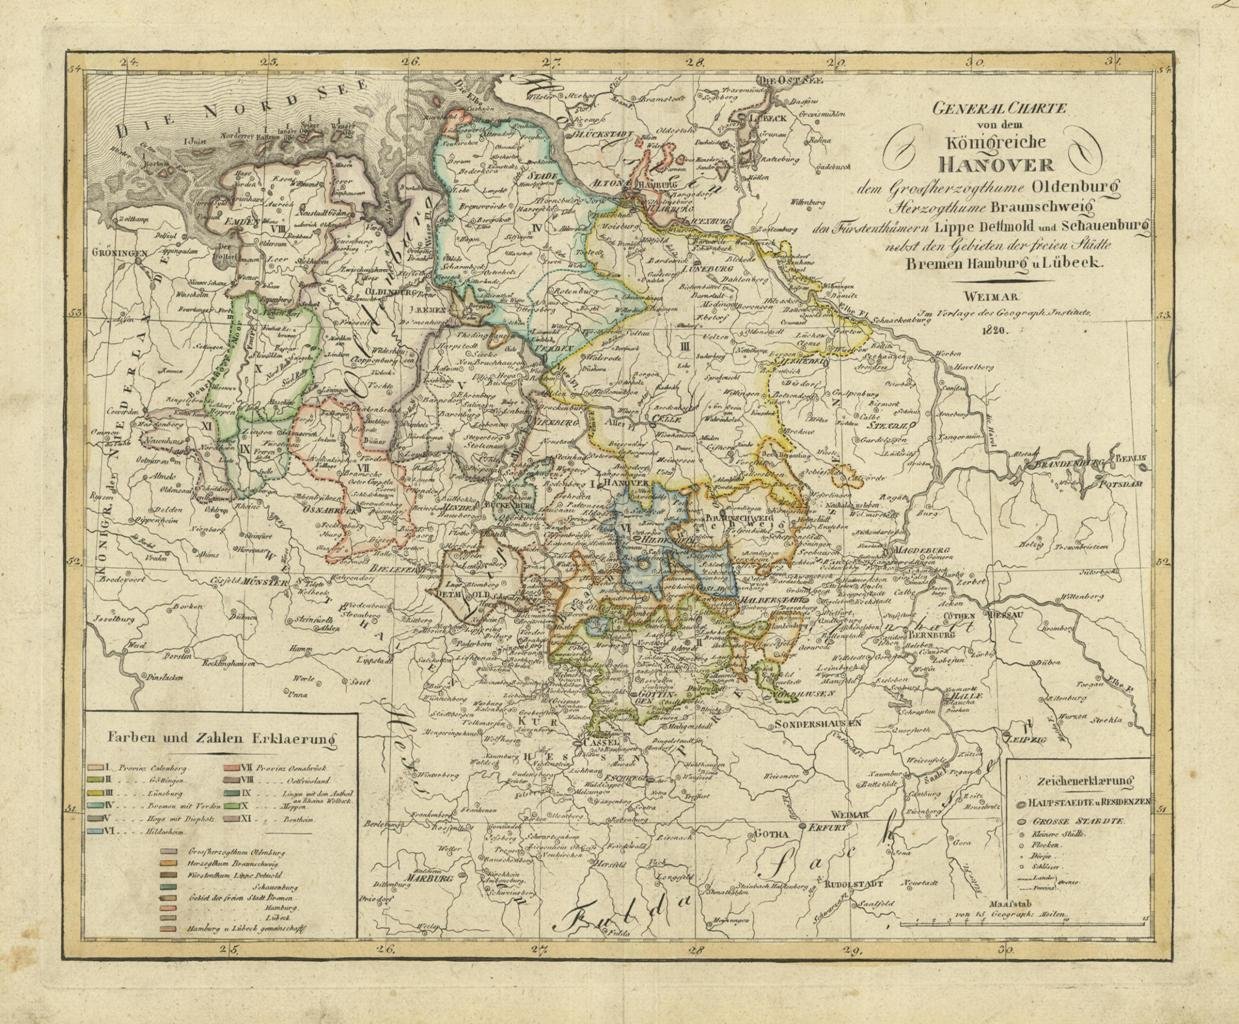 General Charte con dem Koenigreiche Hanover